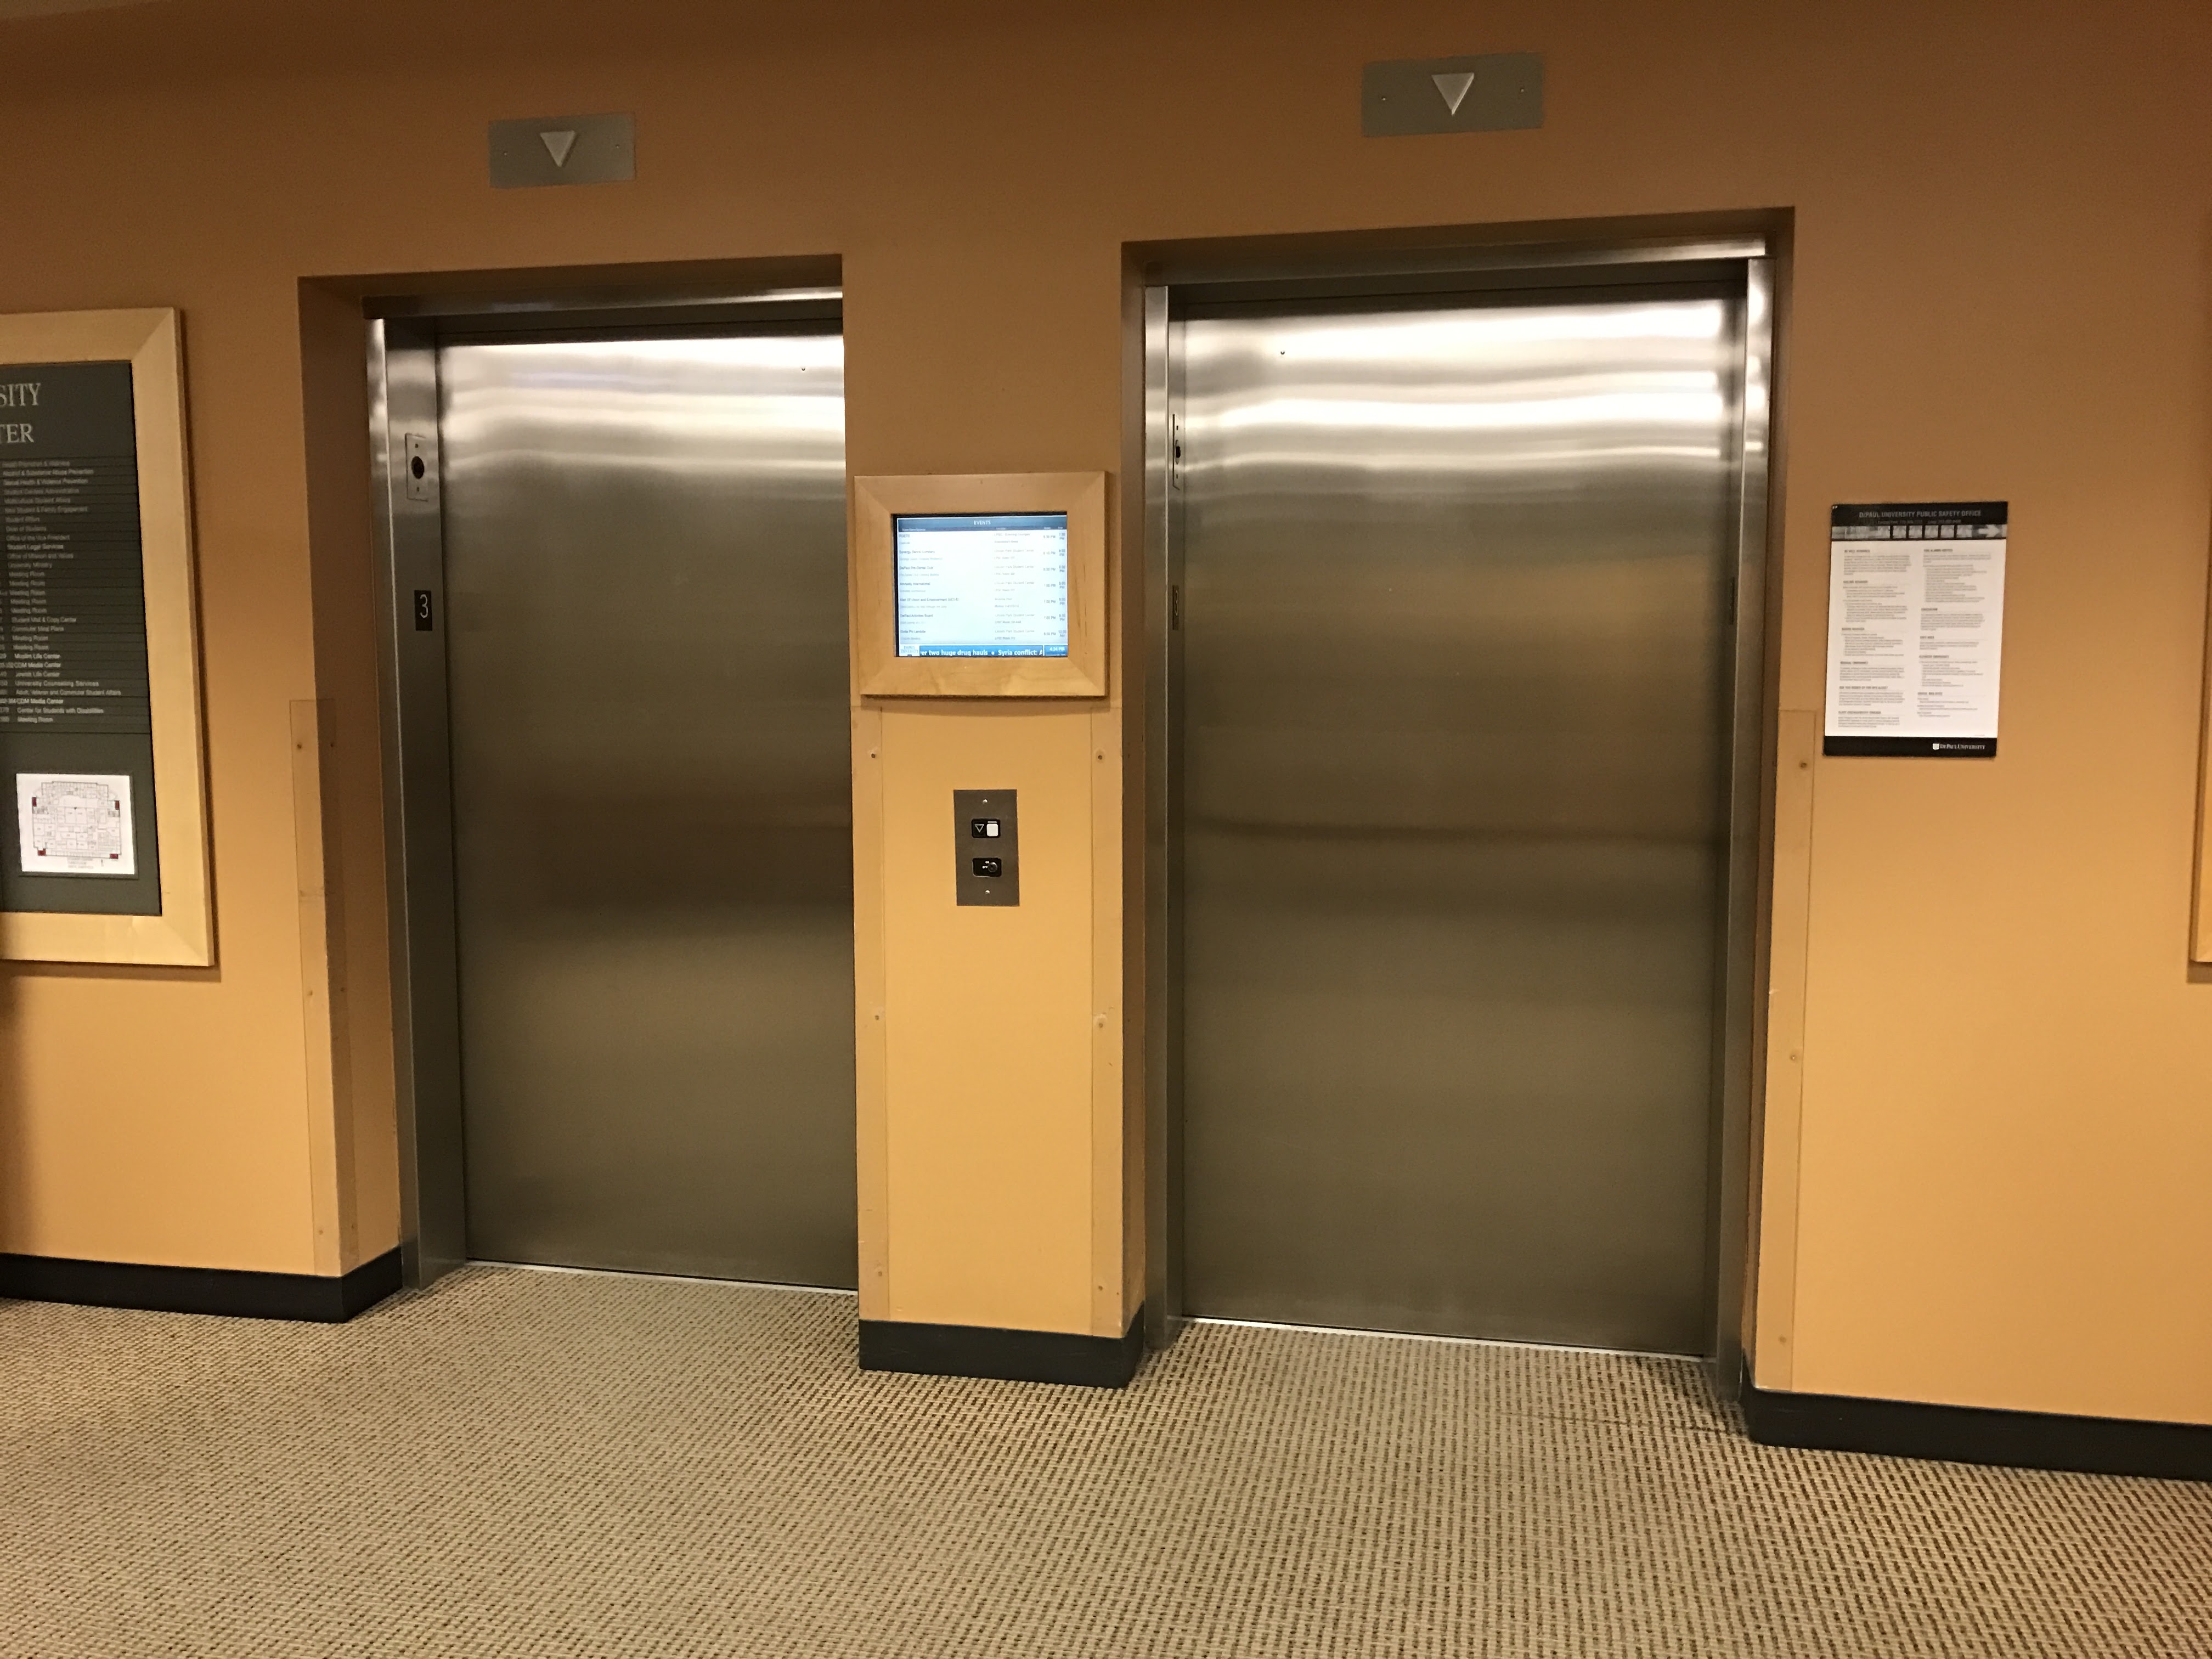 Third floor elevators.